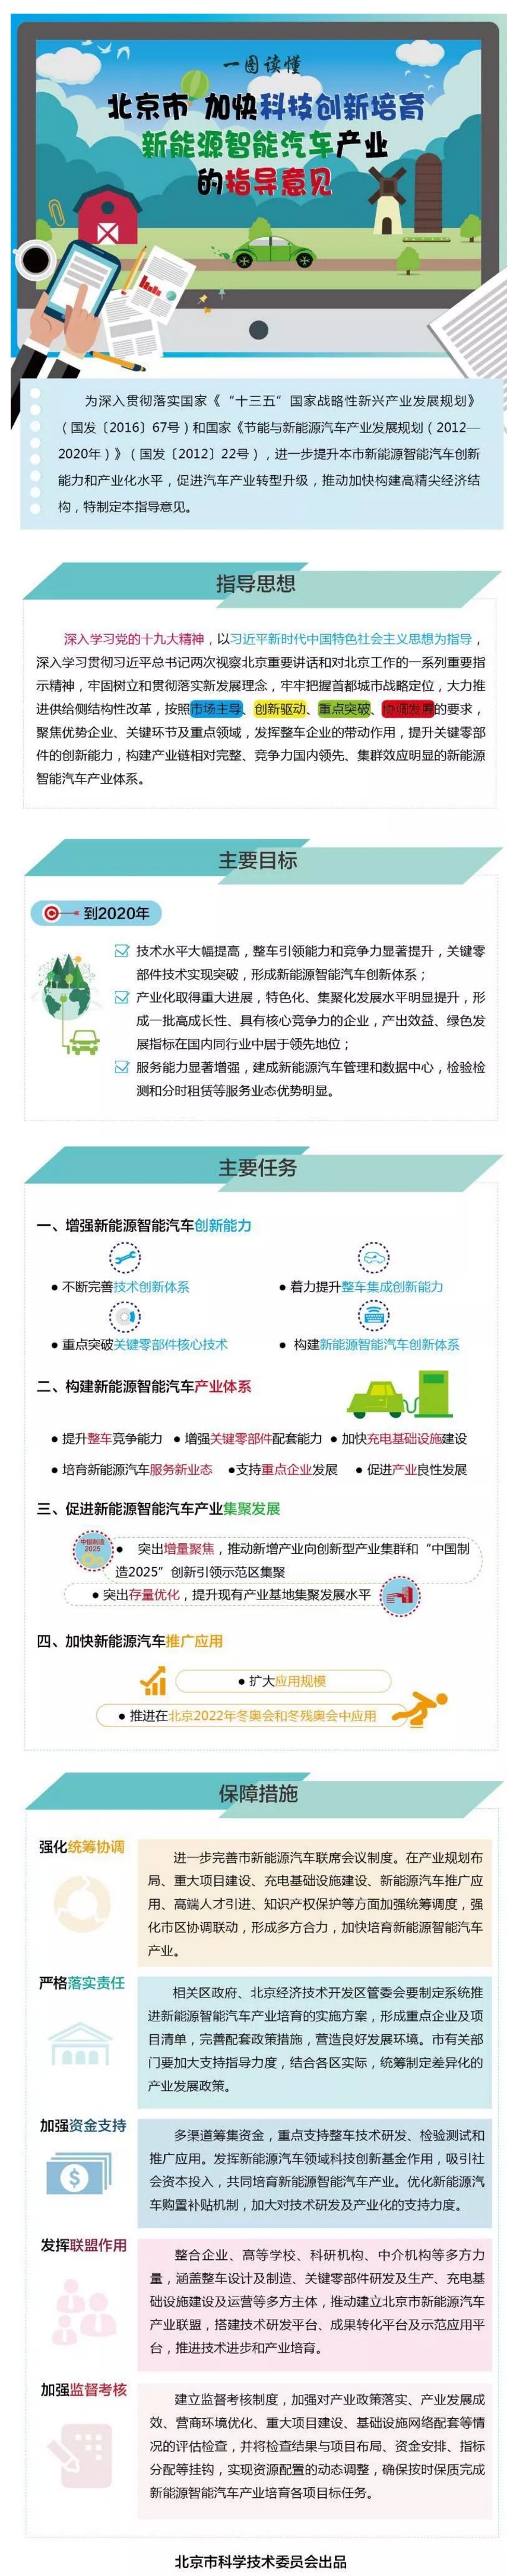 一图看懂《北京市加快科技创新培育新能源智能汽车产业的指导意见》.jpg